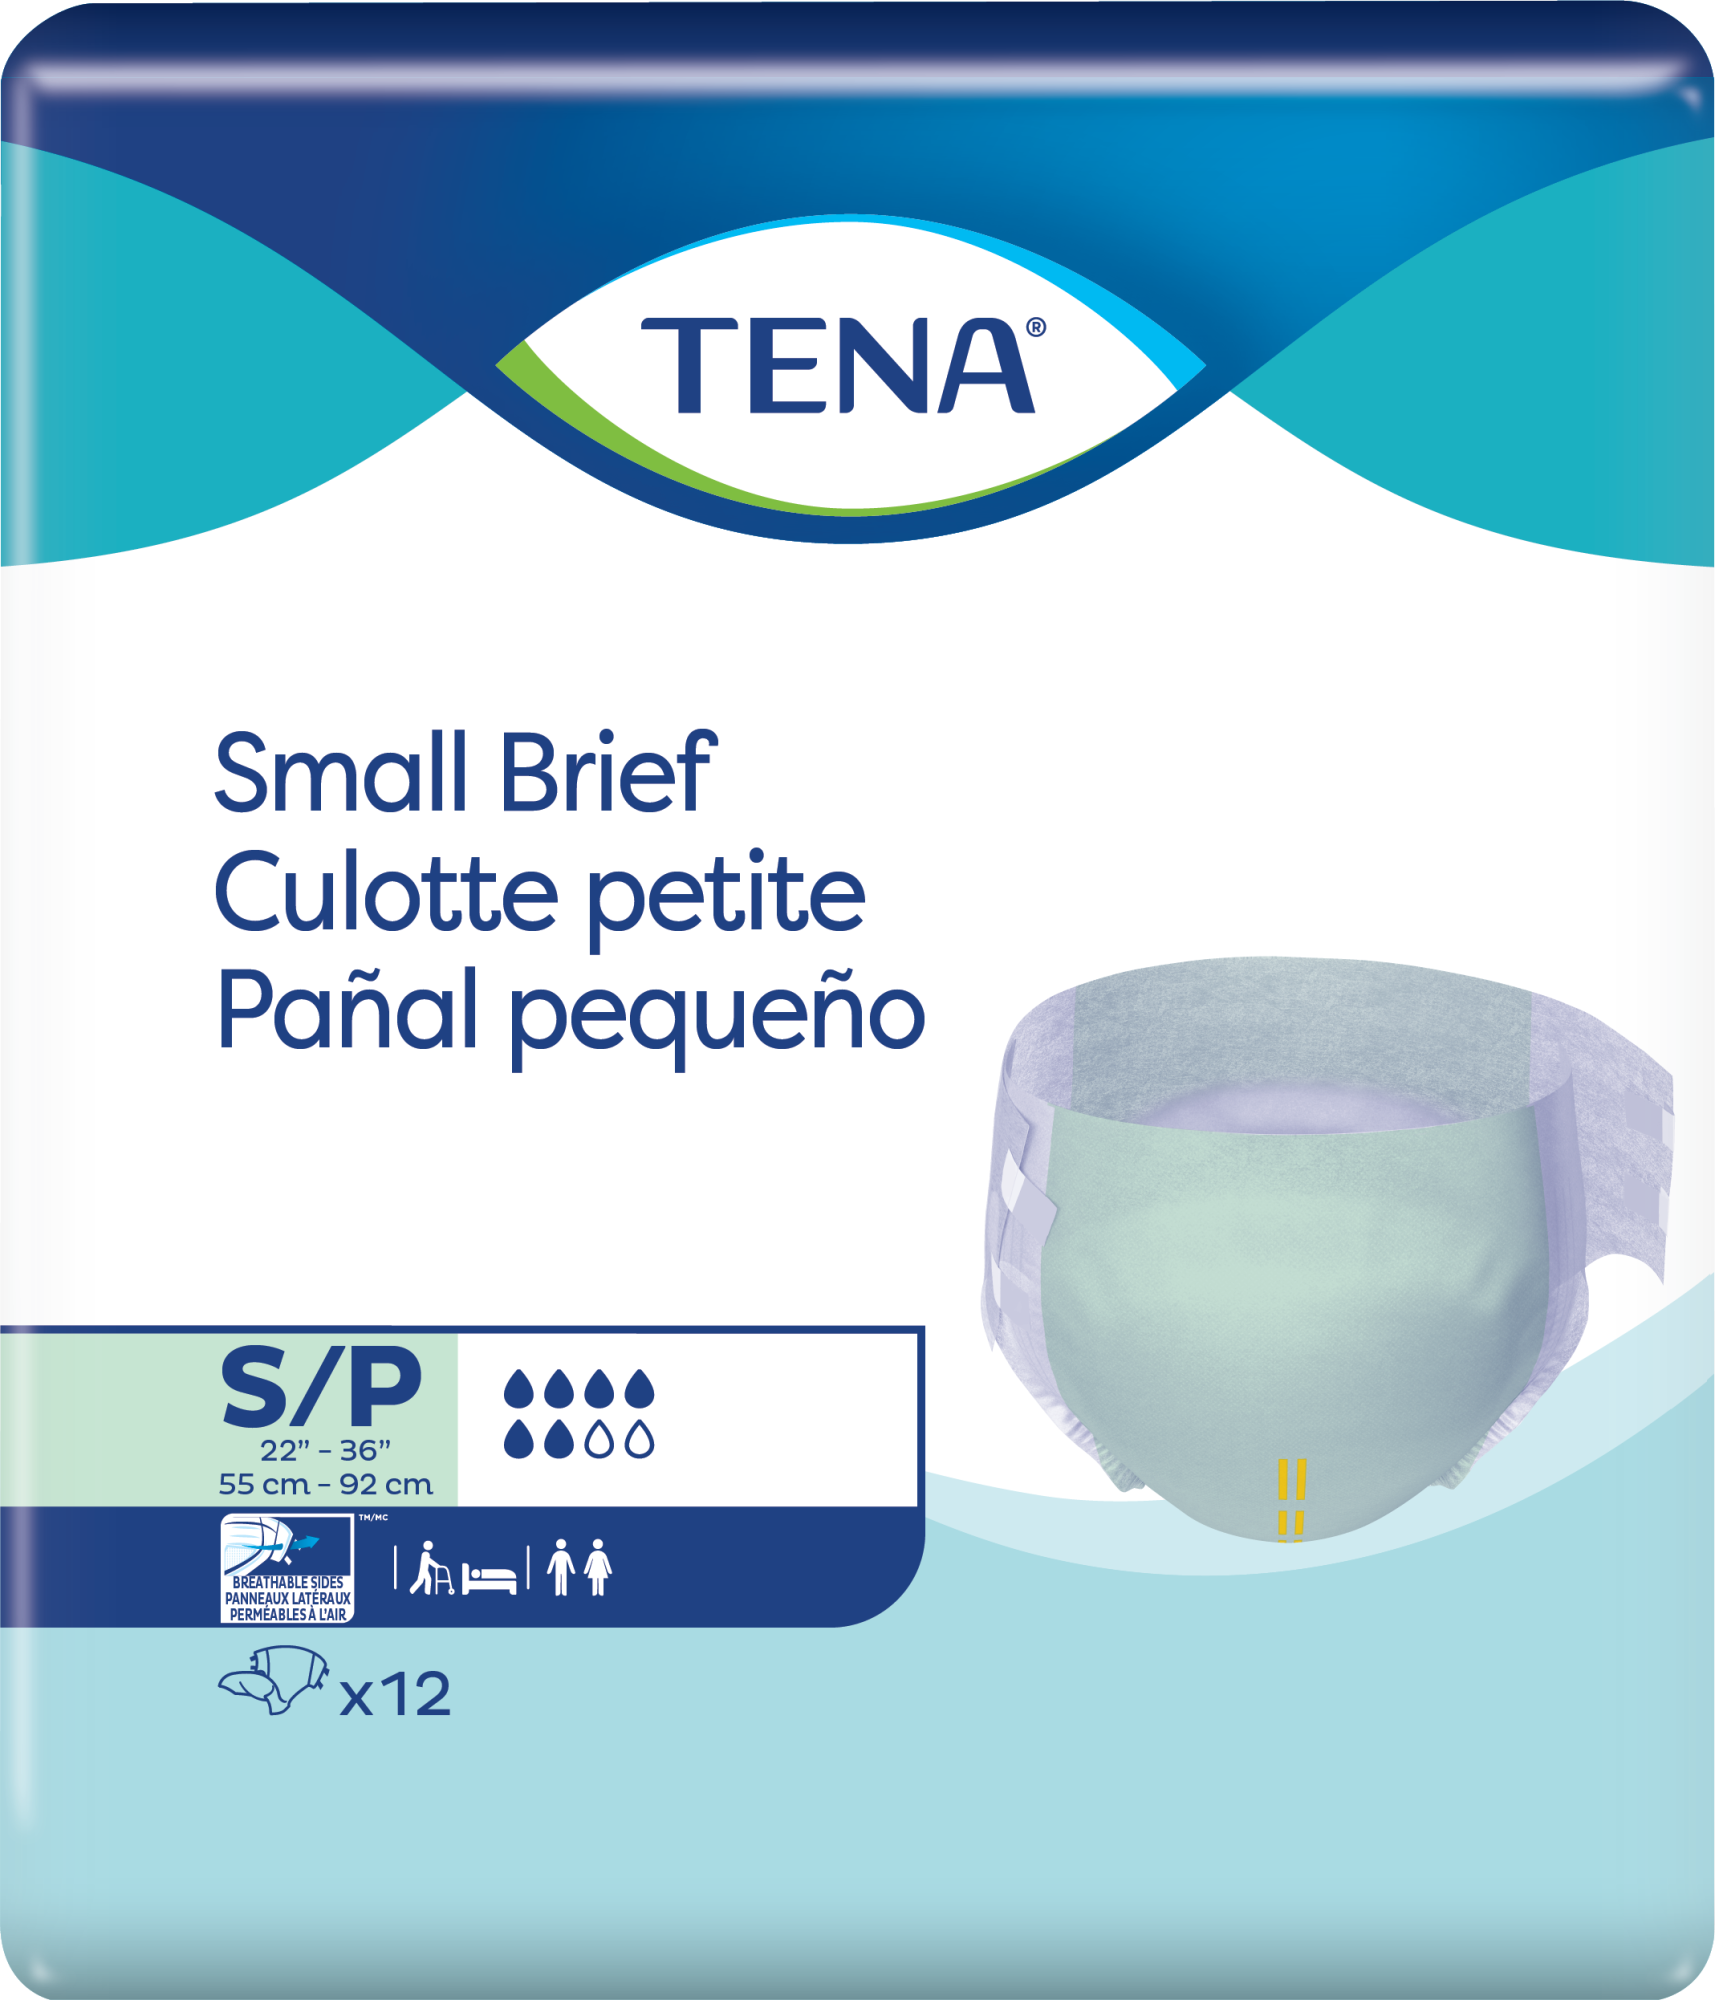 TENA Protective Underwear Overnight Super, MedProDirect Canada